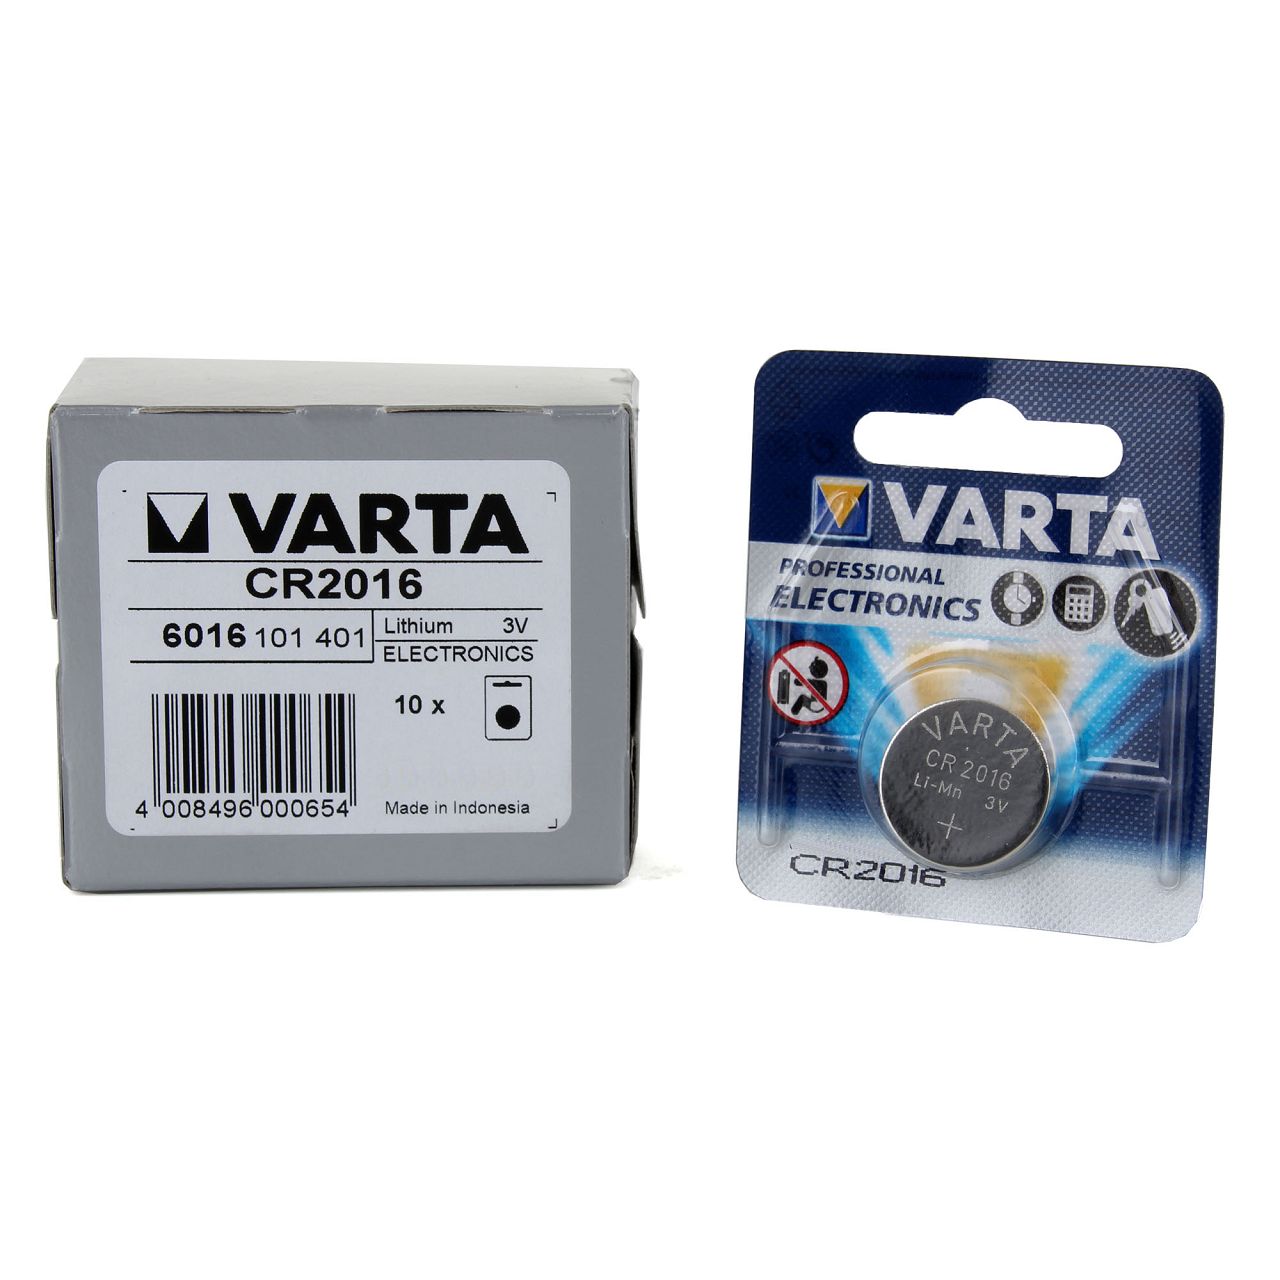 10x VARTA Lithium 3V CR2016 Knopfzelle Knopfbatterie Batterie (MHD 12.2031)